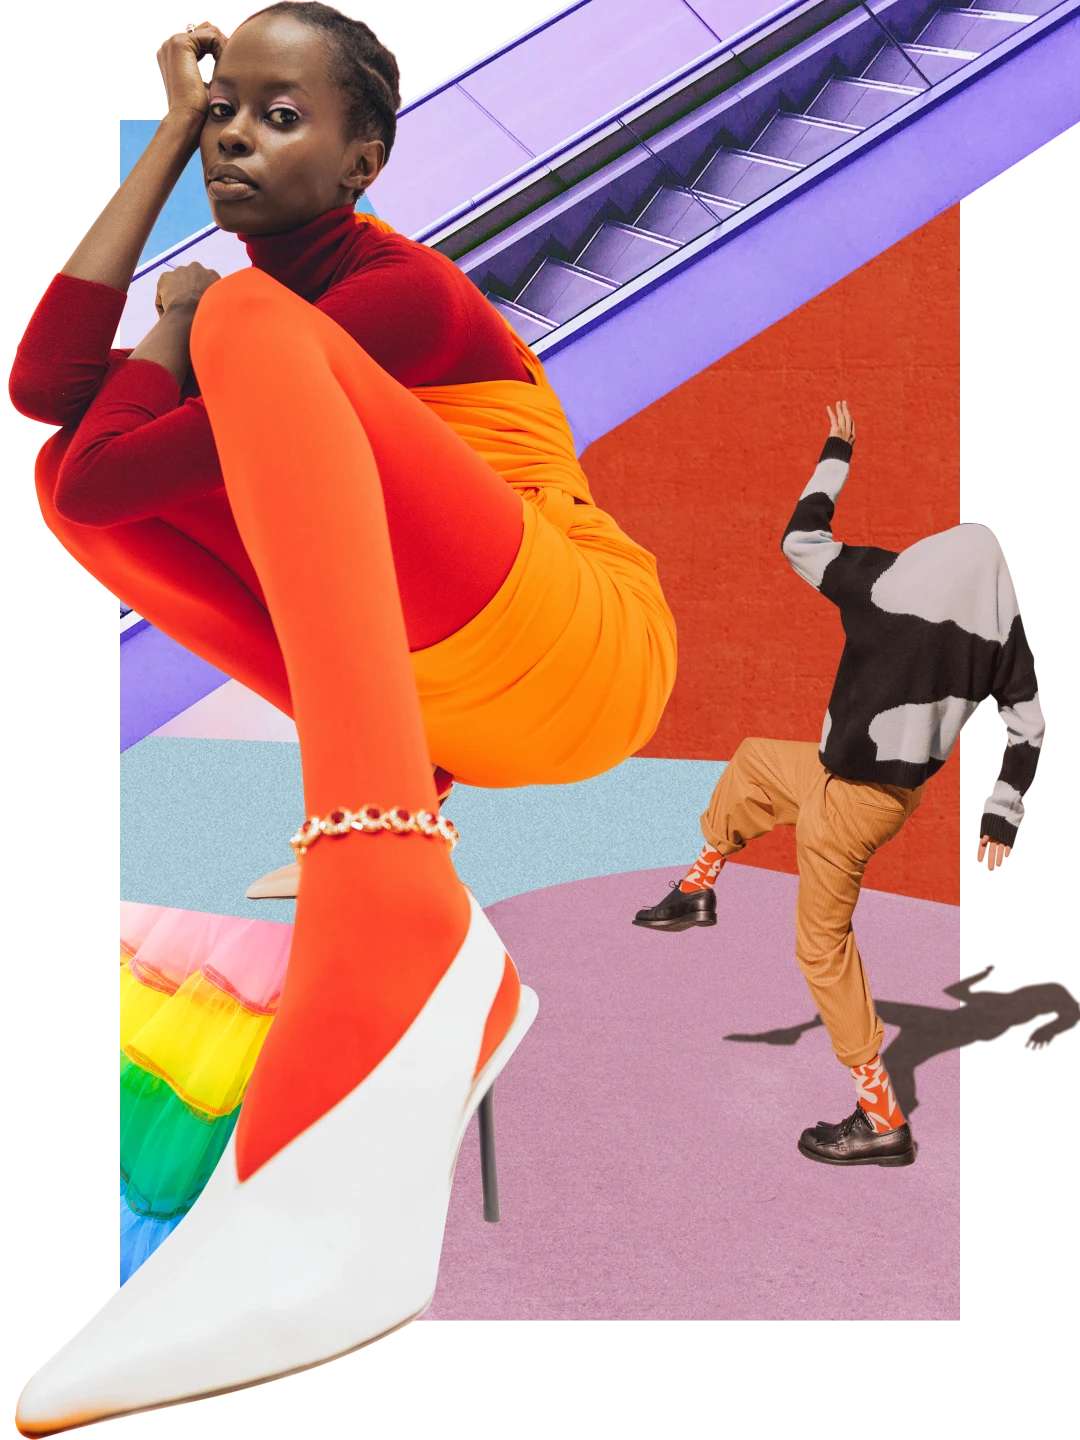 Eine Collage mit bunten Farben und Outfits. Eine Schwarze Frau auf der linken Seite, die ein leuchtend orangefarbenes Outfit trägt. Eine Person rechts, die einen Pullover mit Wolken-Print über ihren Kopf gezogen hat und eine orangefarbene Hose und Socken trägt. Oben im Hintergrund eine violette Rolltreppe.
